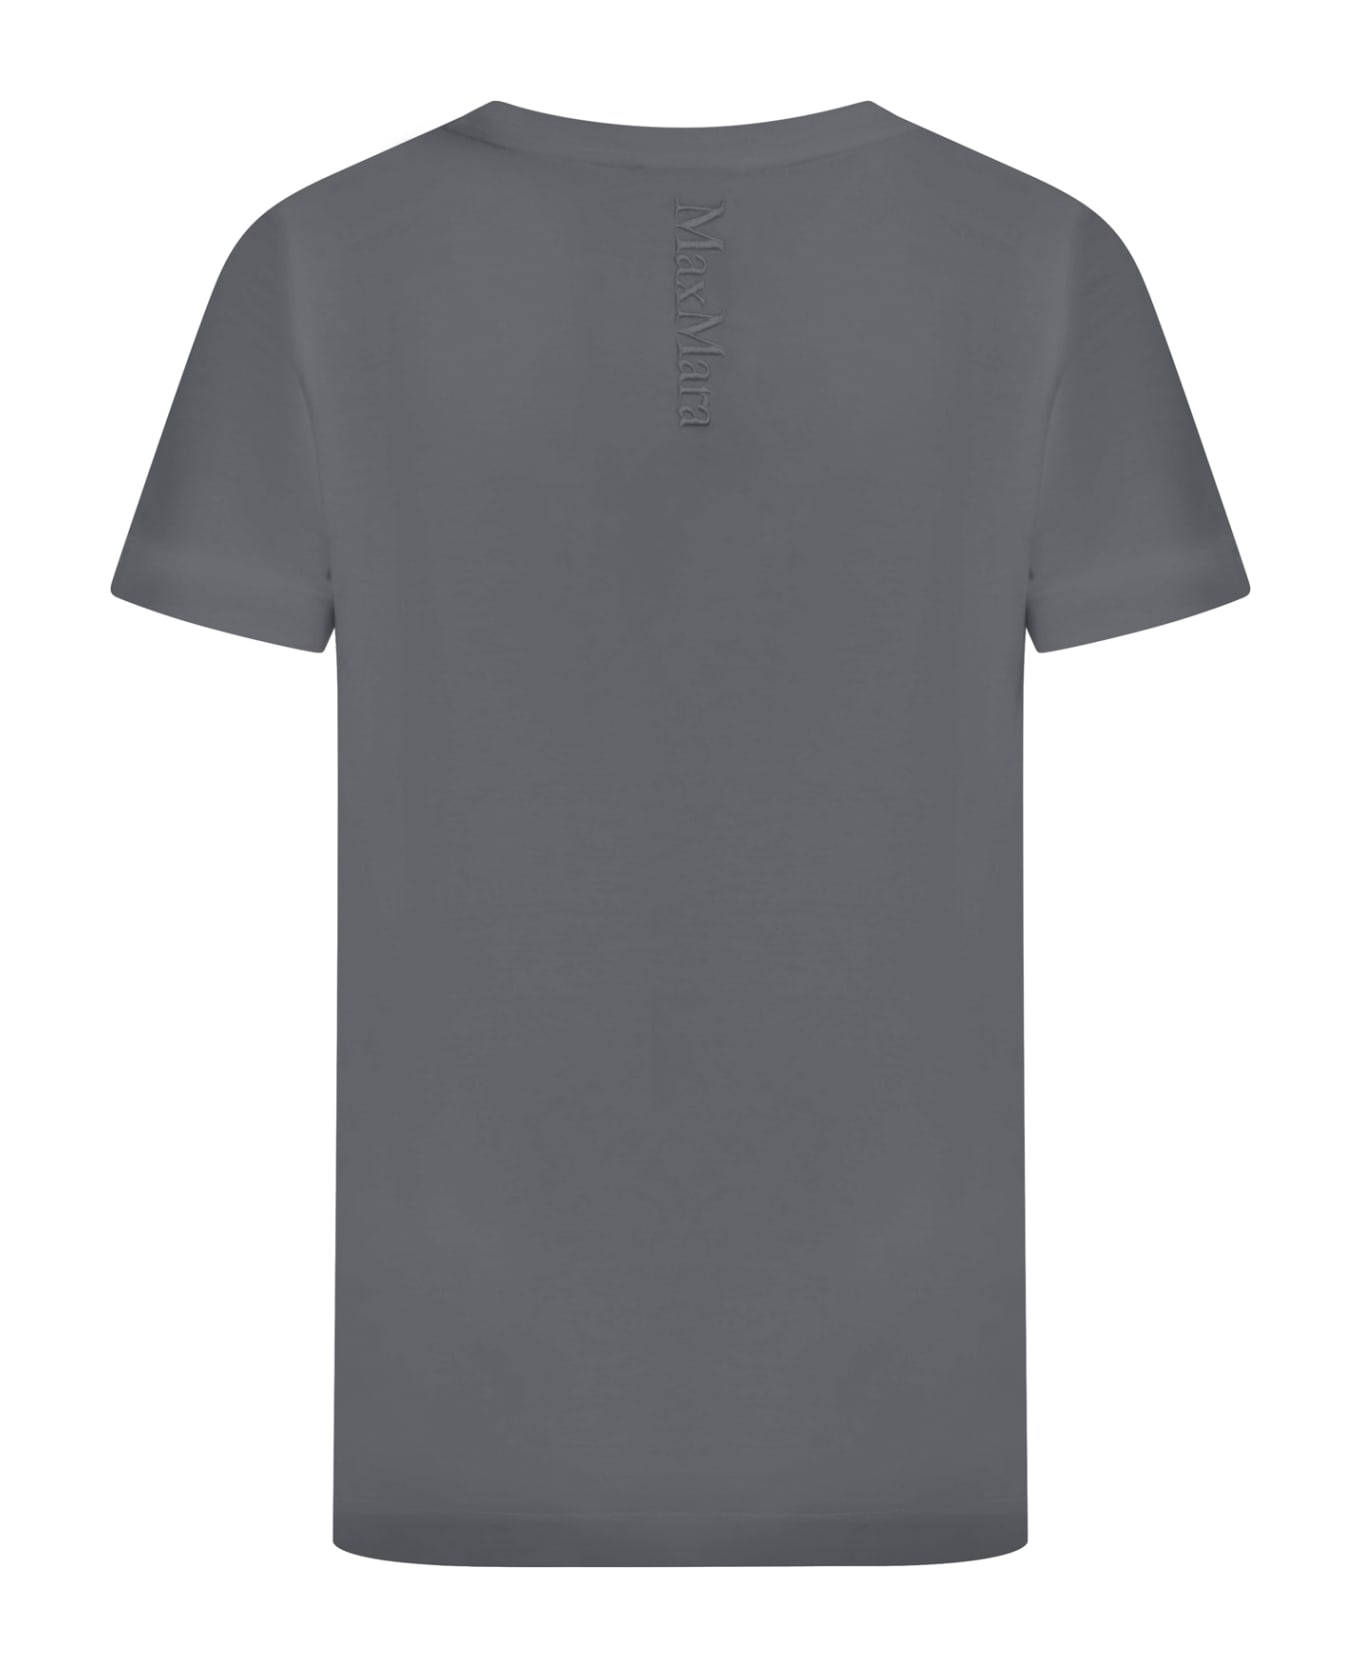 &#Chicago Bulls Mitchell & Ness Hardwood Classics T-Shirt Quito T-shirt - Dark Grey